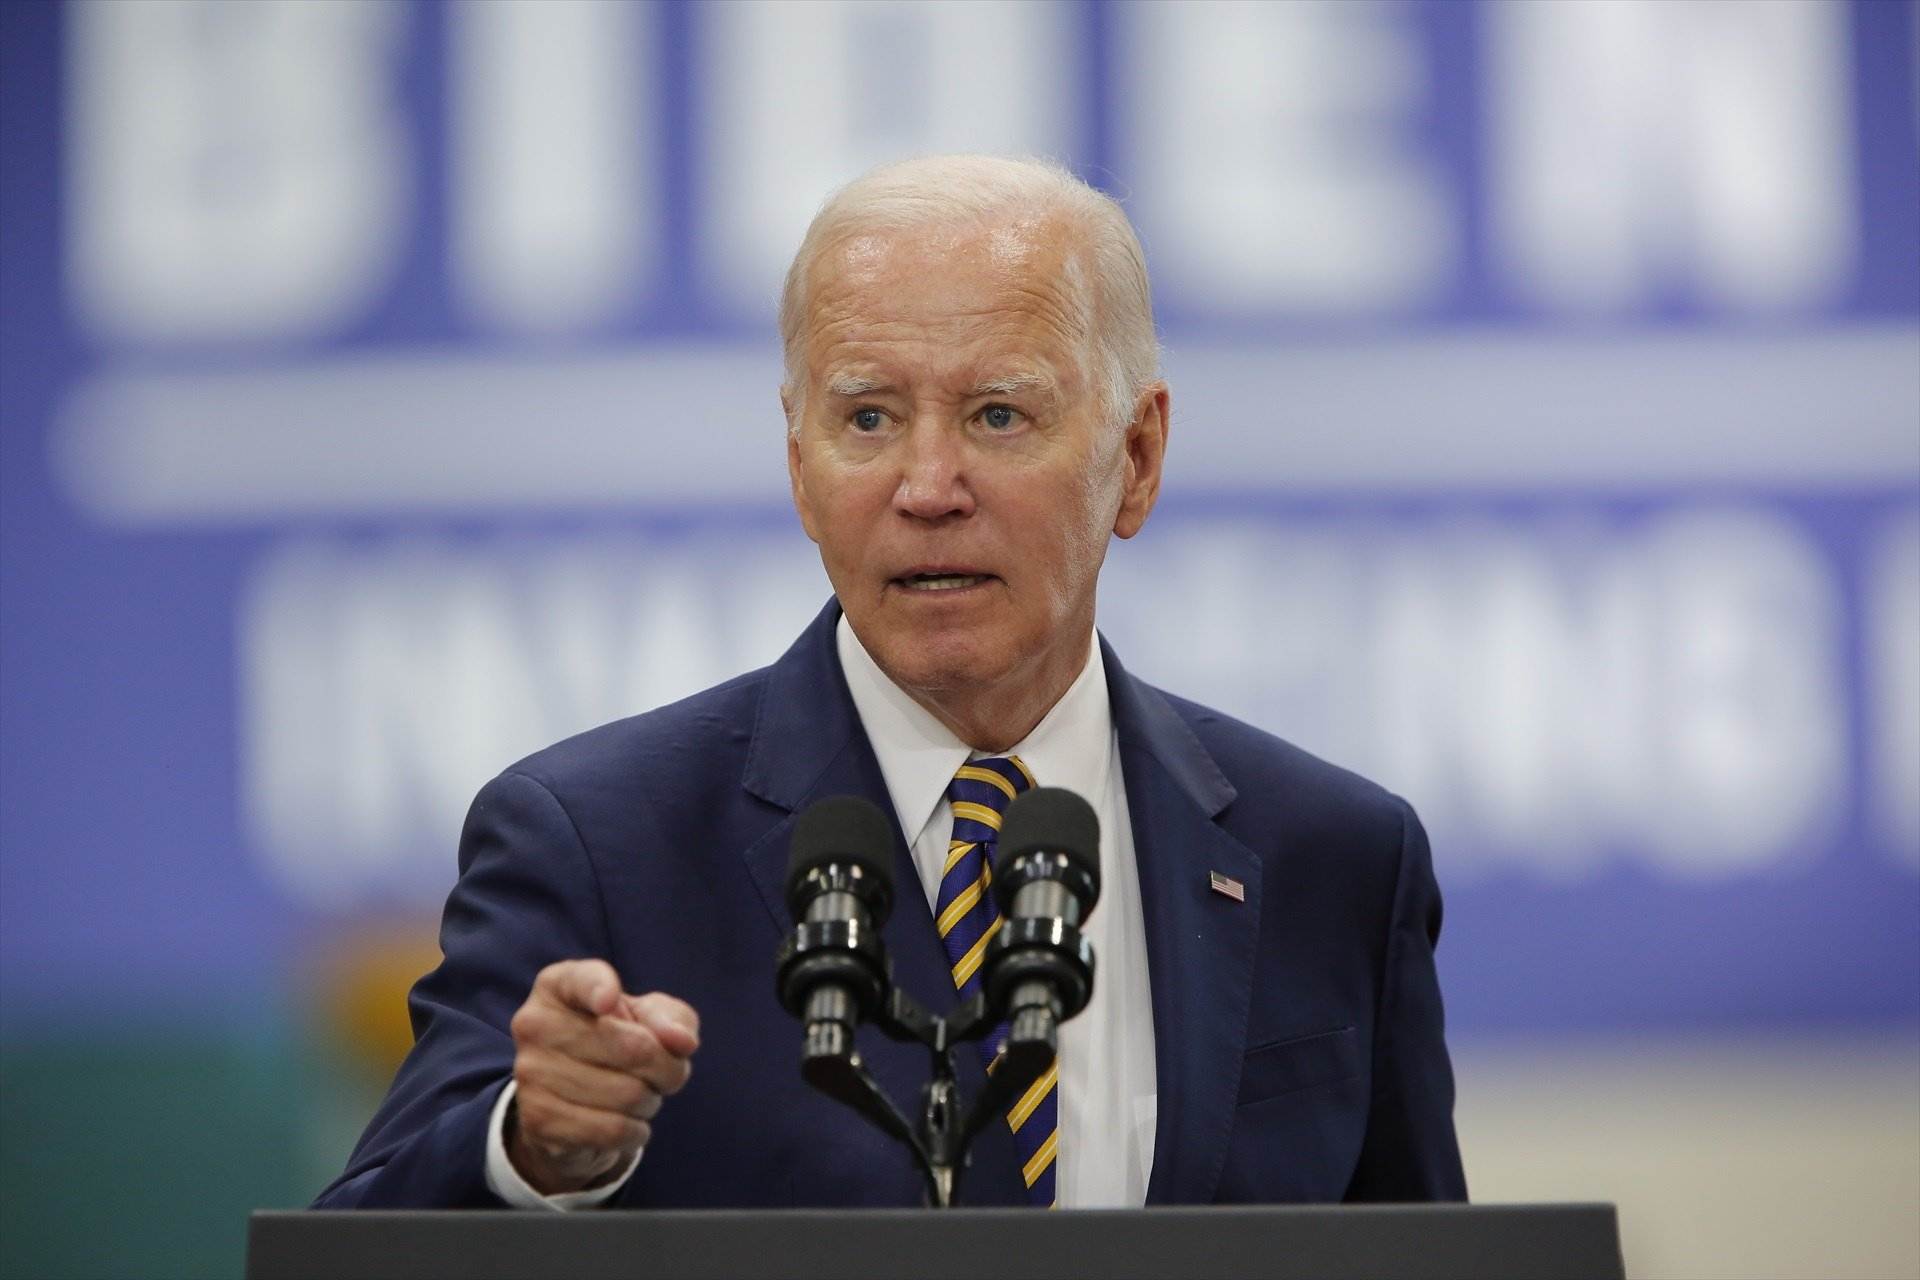 Joe Biden expressa el suport sense fissures dels EUA a Israel: "Tenen dret a defensar-se"